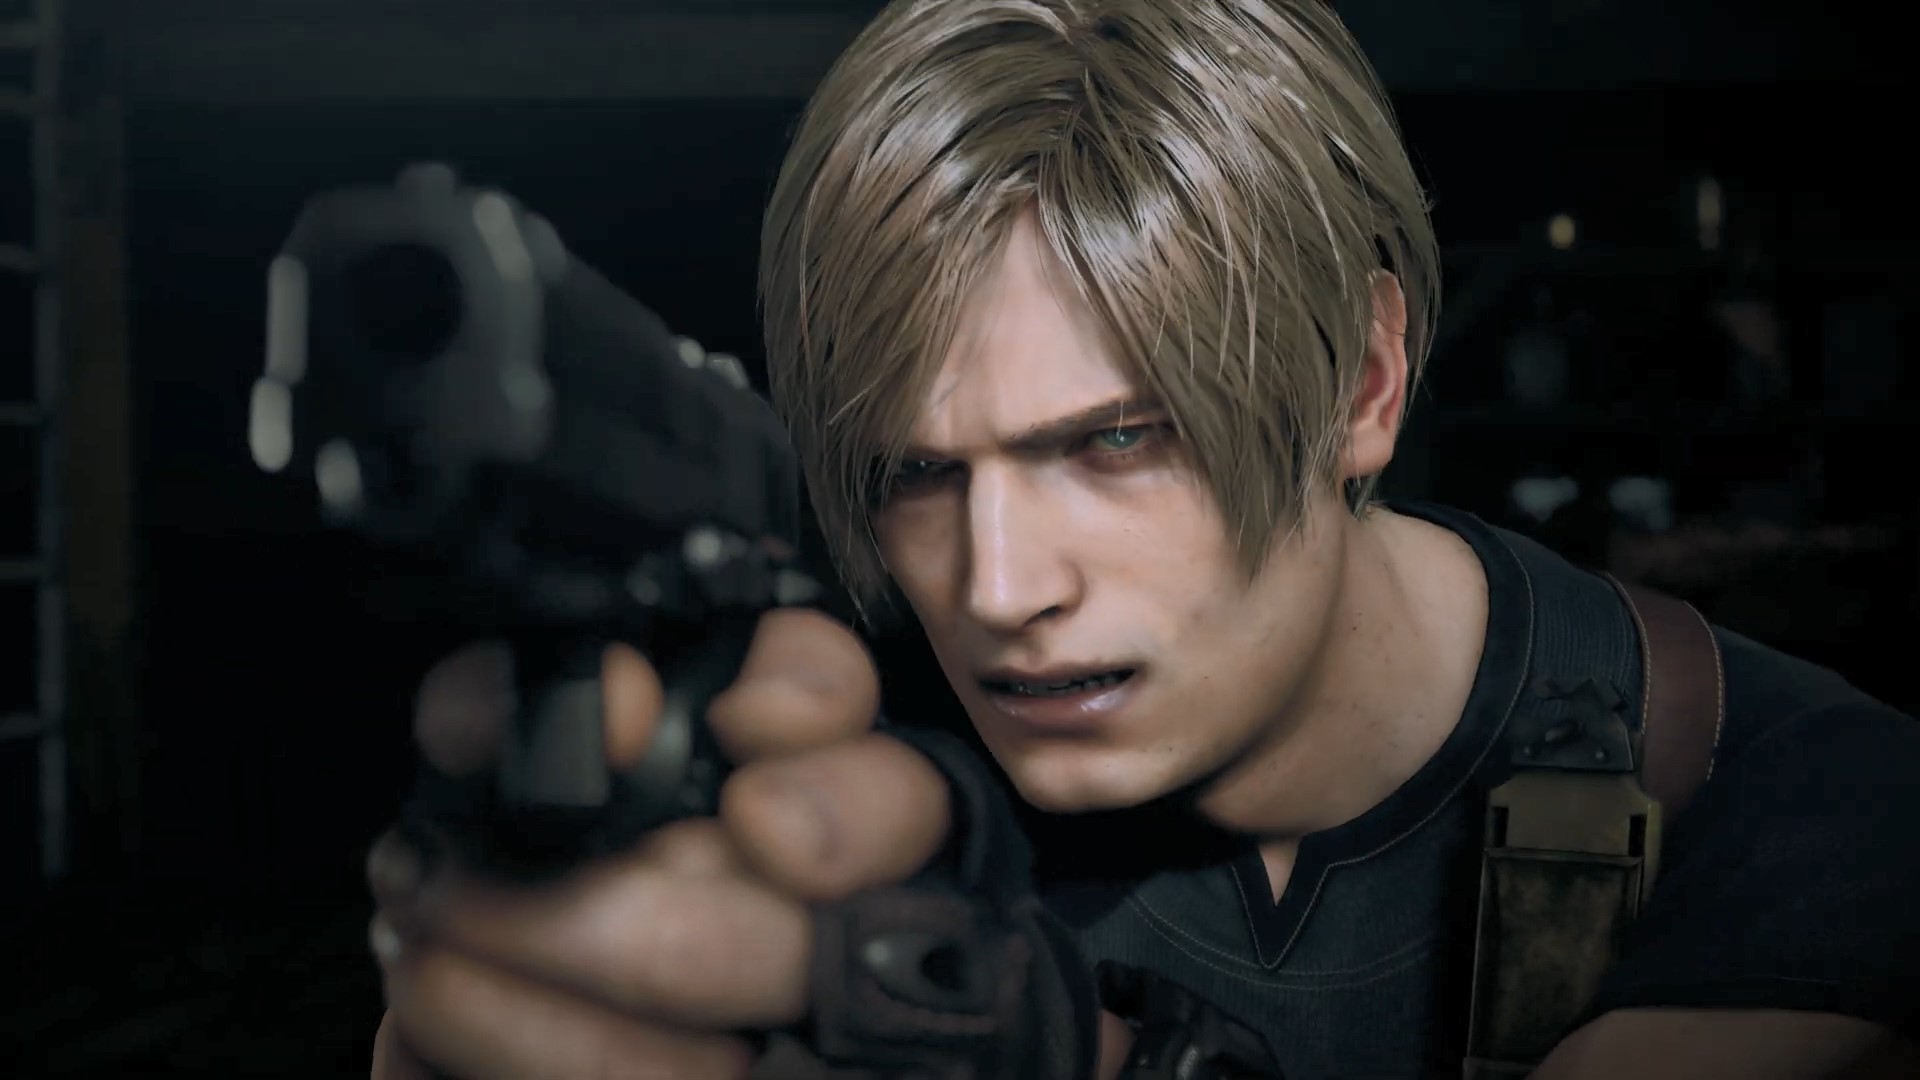 Resident Evil 4 Remake terá dublagem PT-BR!